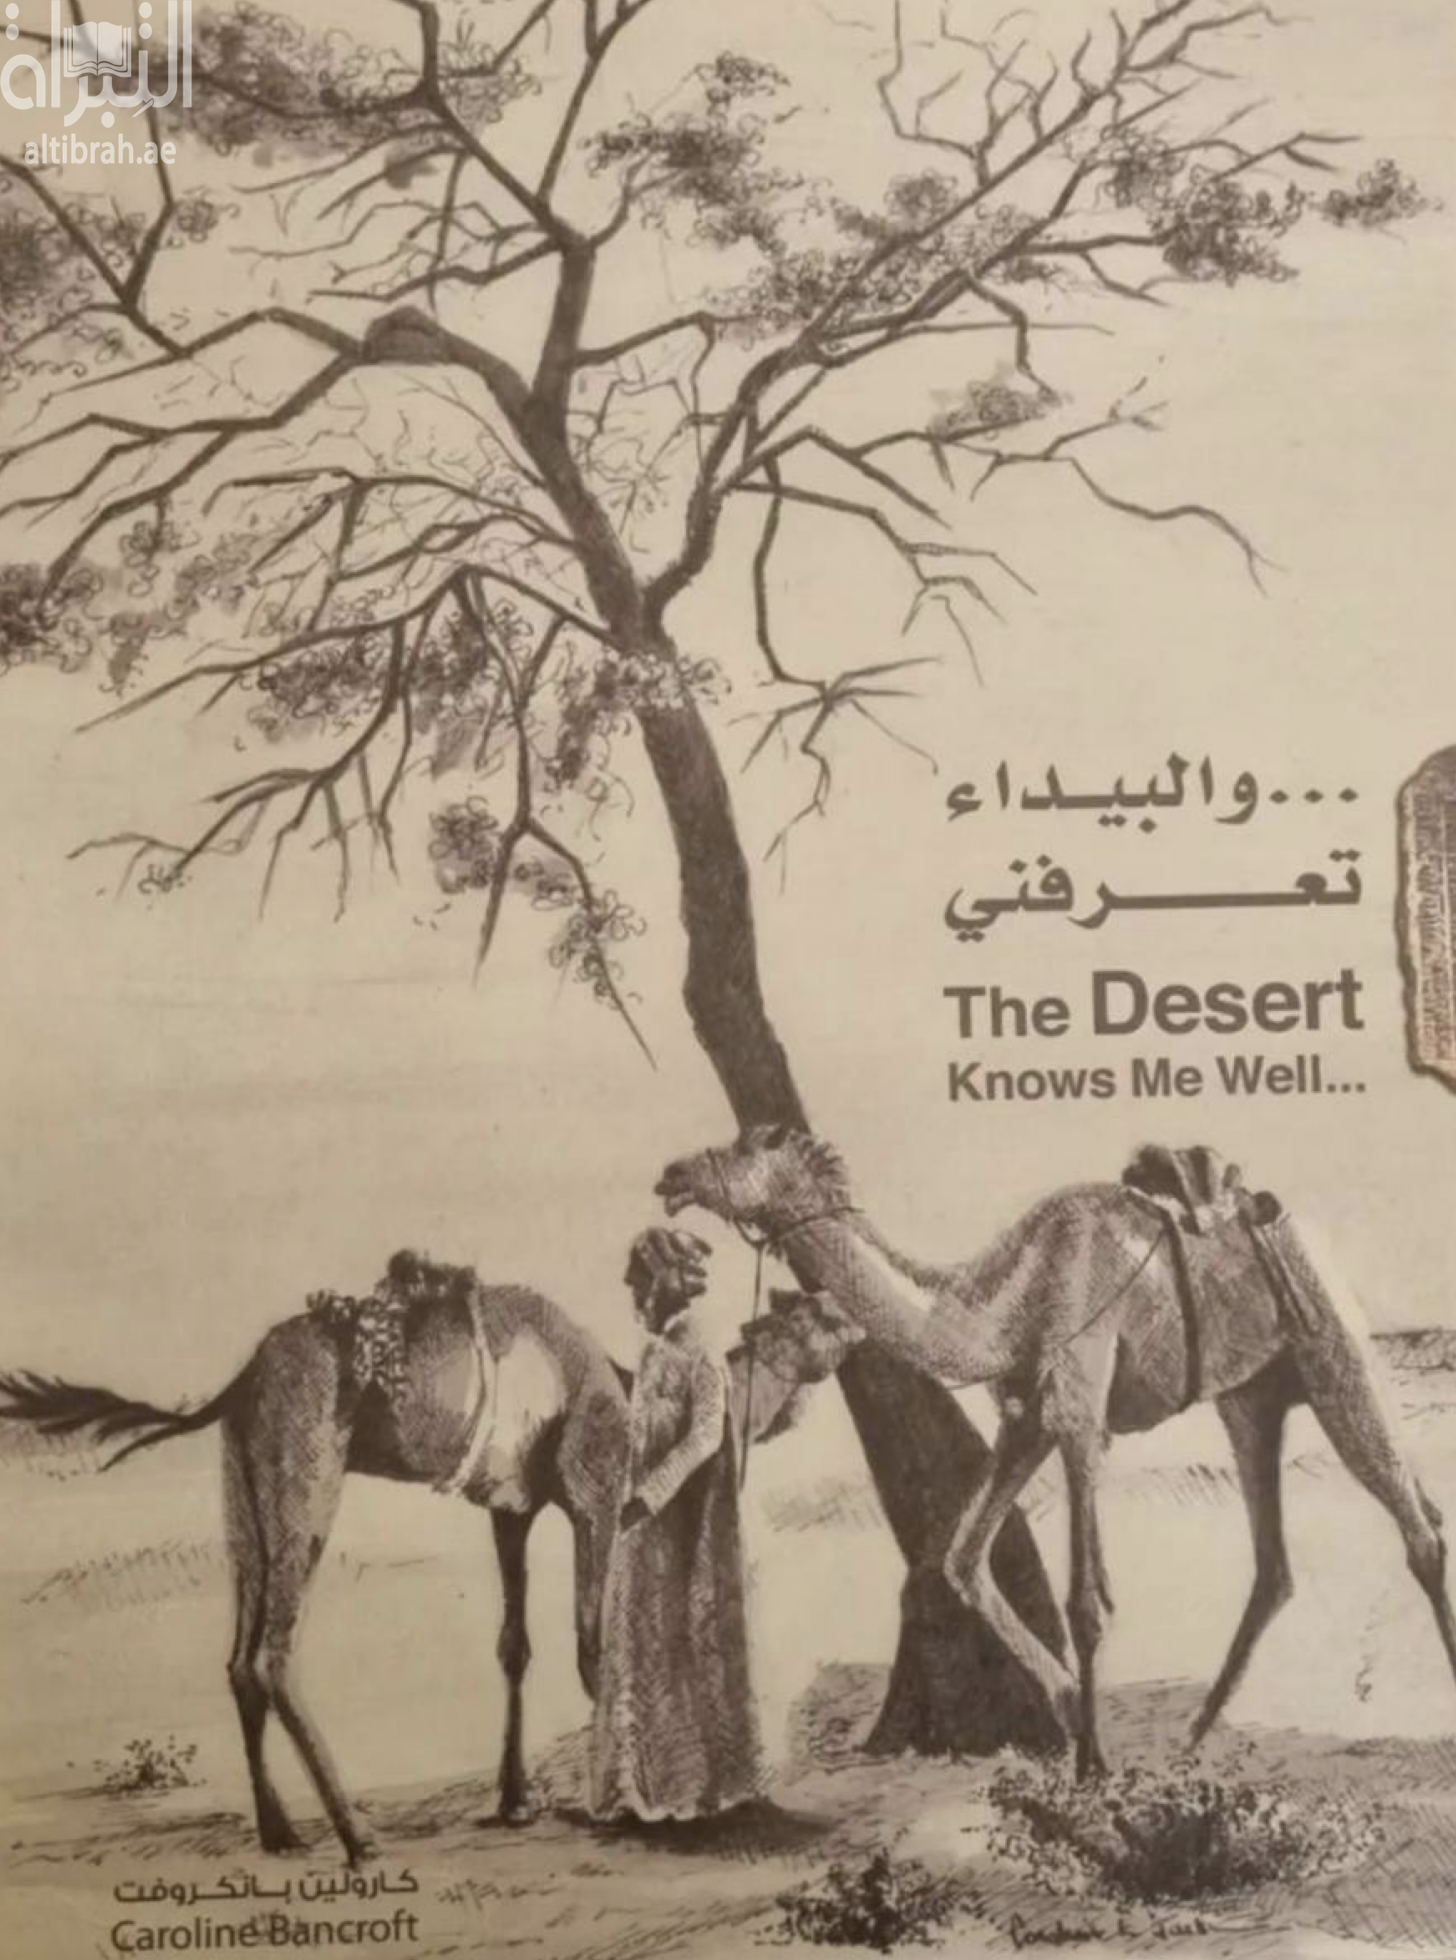 و البيداء تعرفني  The desert knows me well